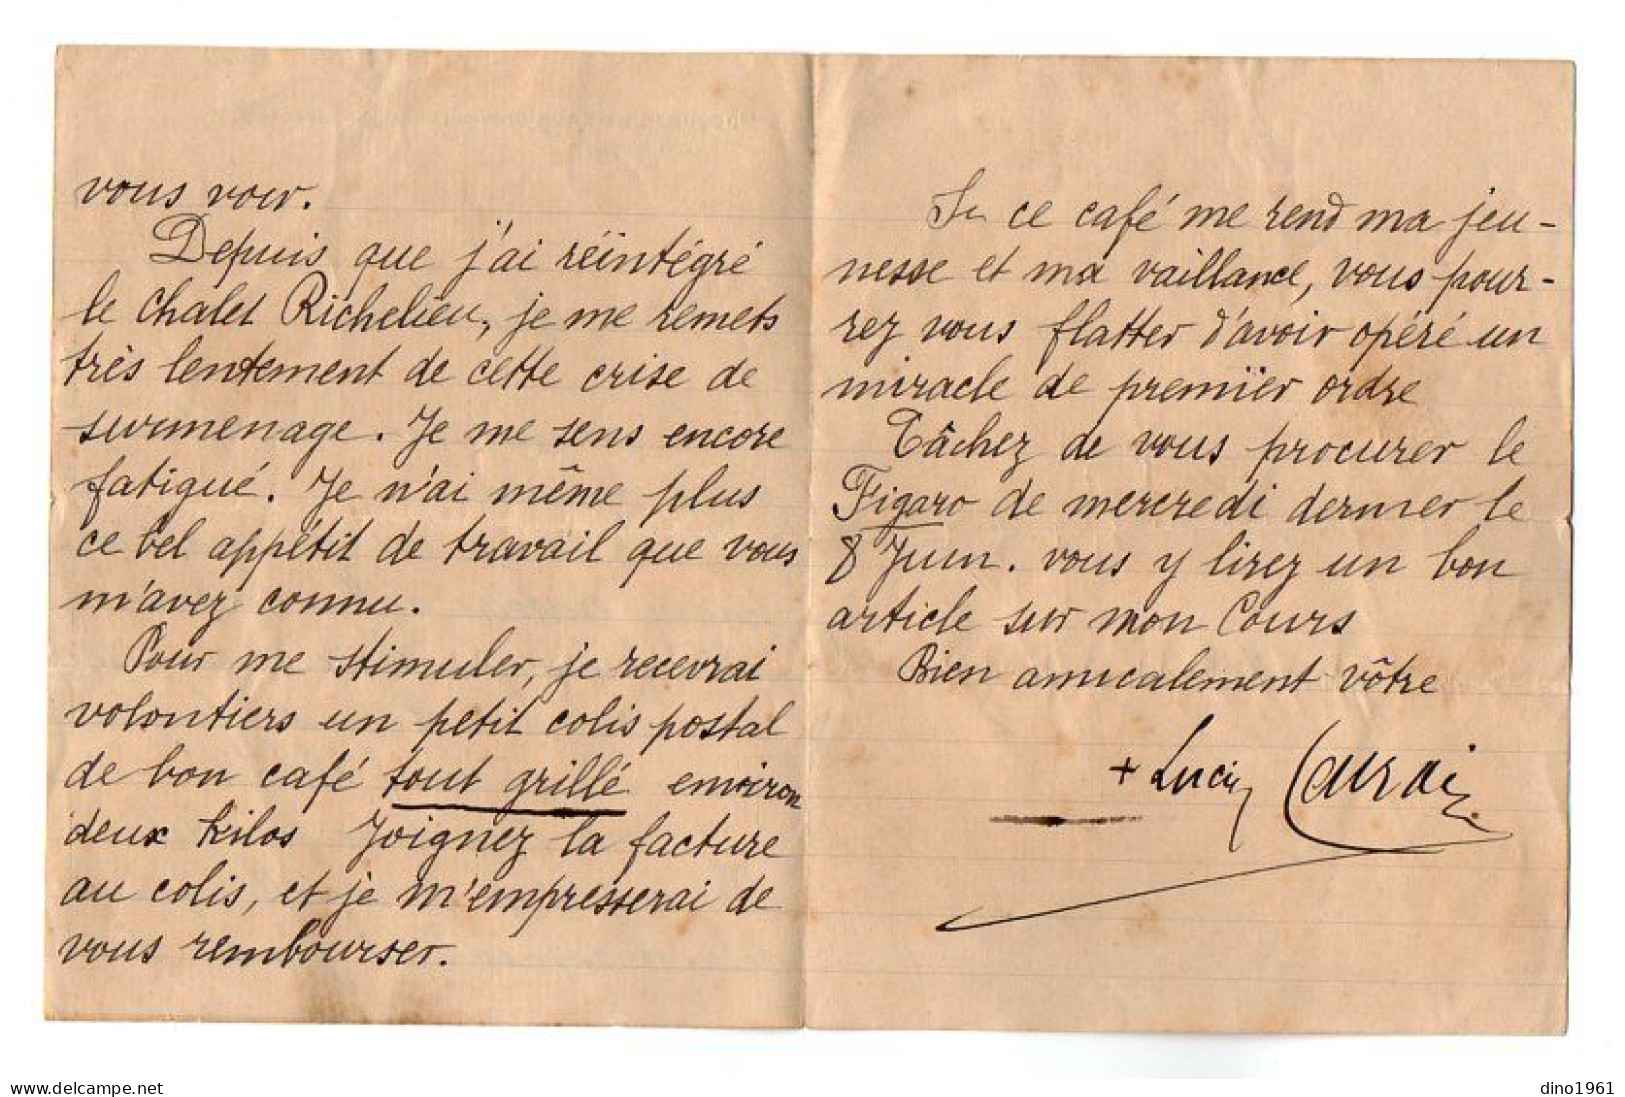 VP22.406 - POUGUES - LES - EAUX 1921 - LAS - Lettre Autographe Signée - Mgr Lucien LACROIX Evêque De Tarentaise ..... - Personnages Historiques